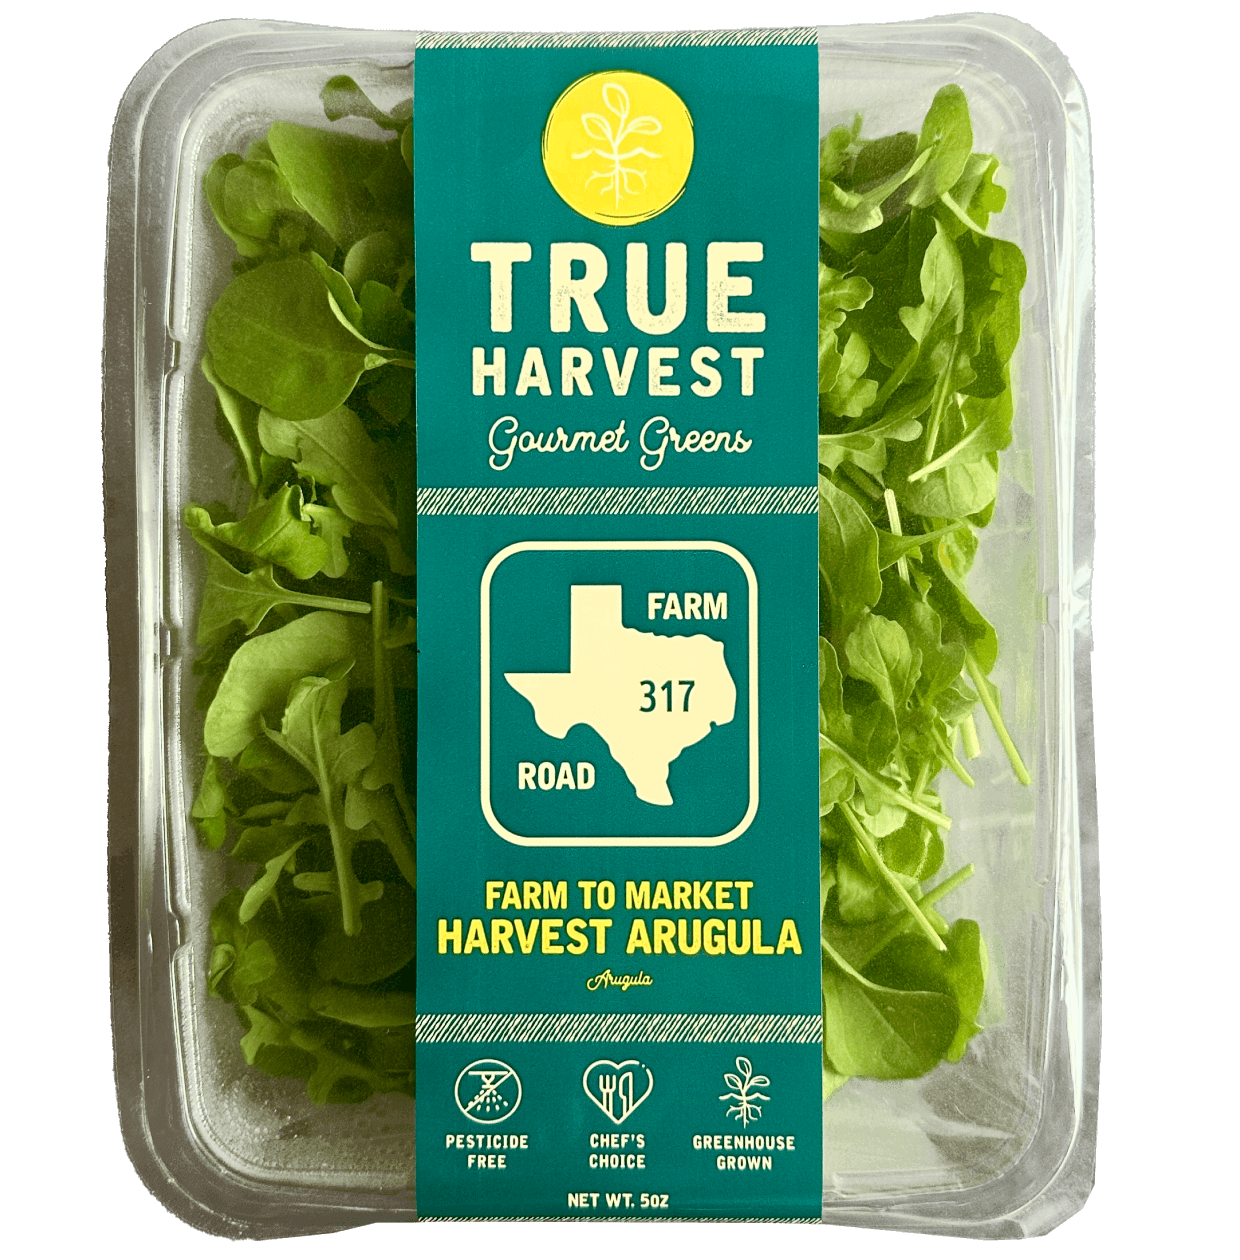 TrueHarvest Farms gourmet greens farm to market Harvest Arugula clamshell packaging